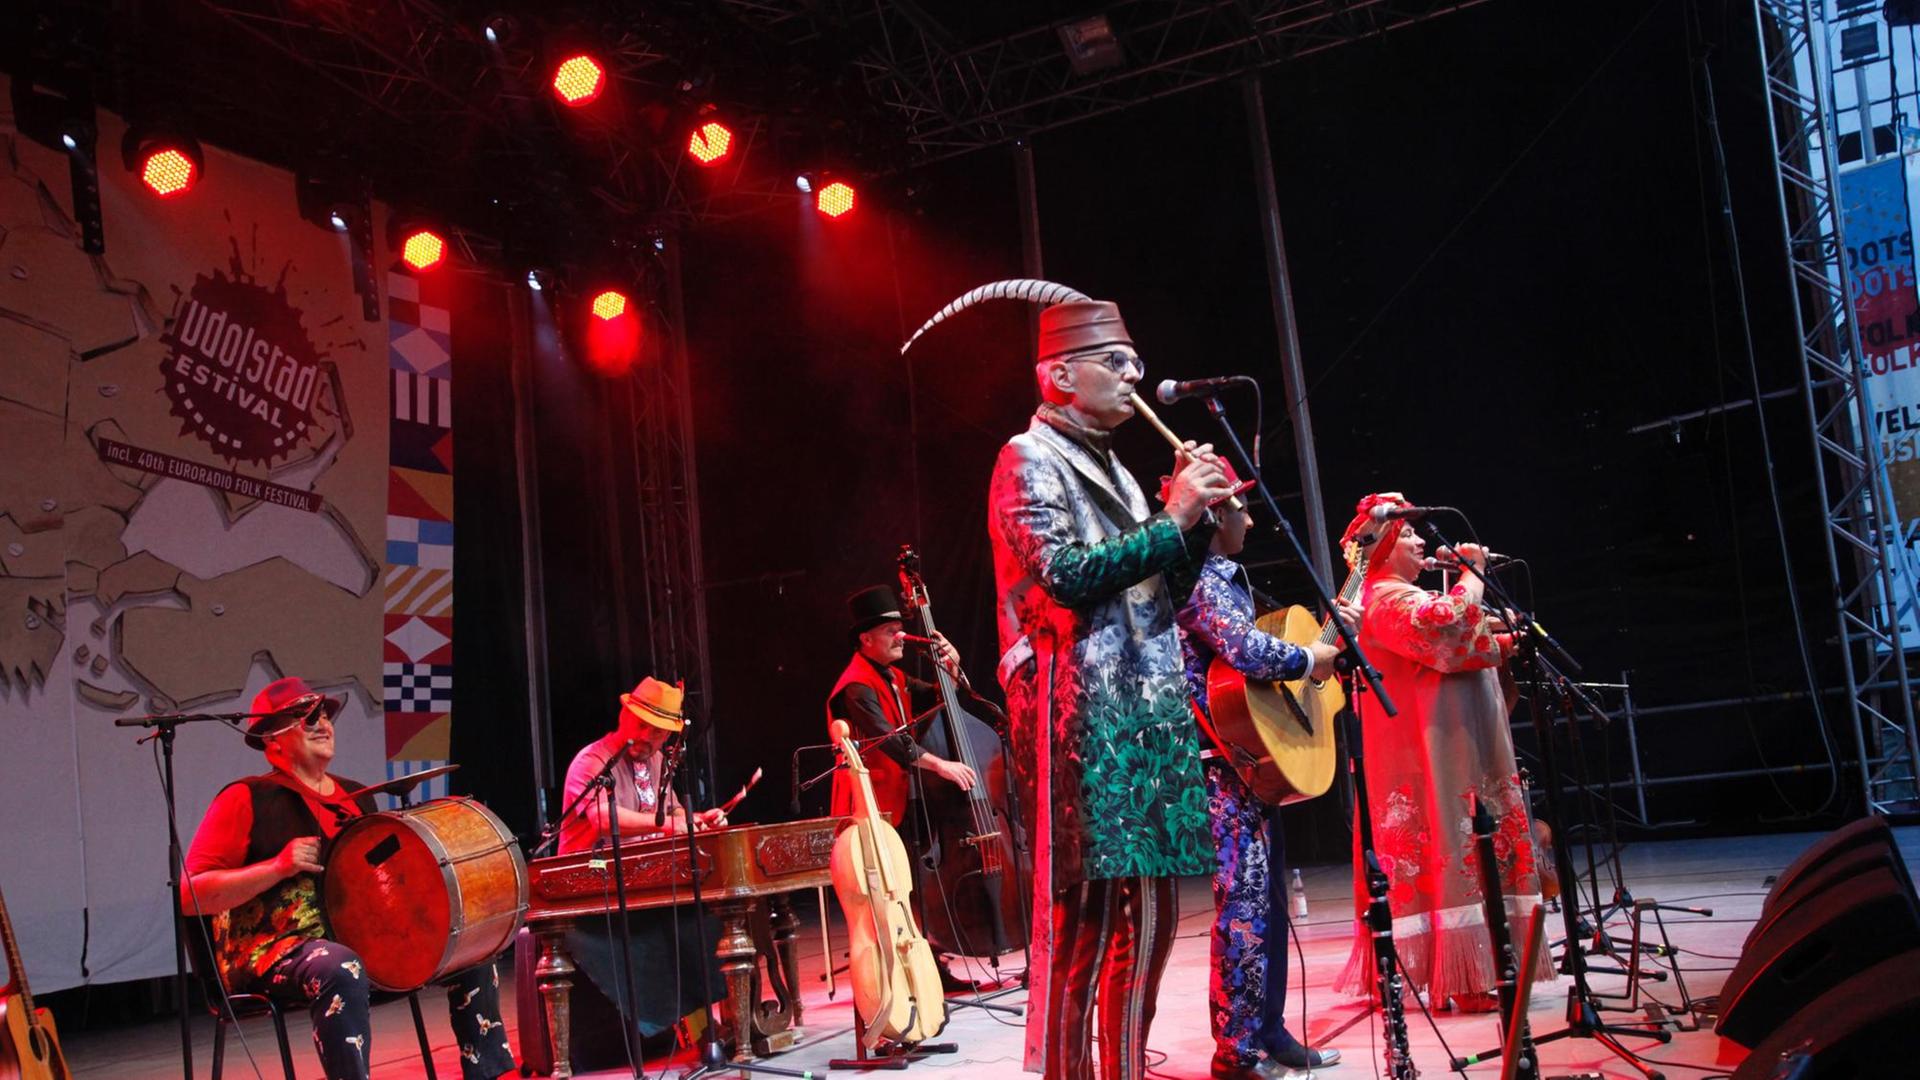 Vier buntgekleidete Musiker und eine Sängerin stehen auf einer Bühne.